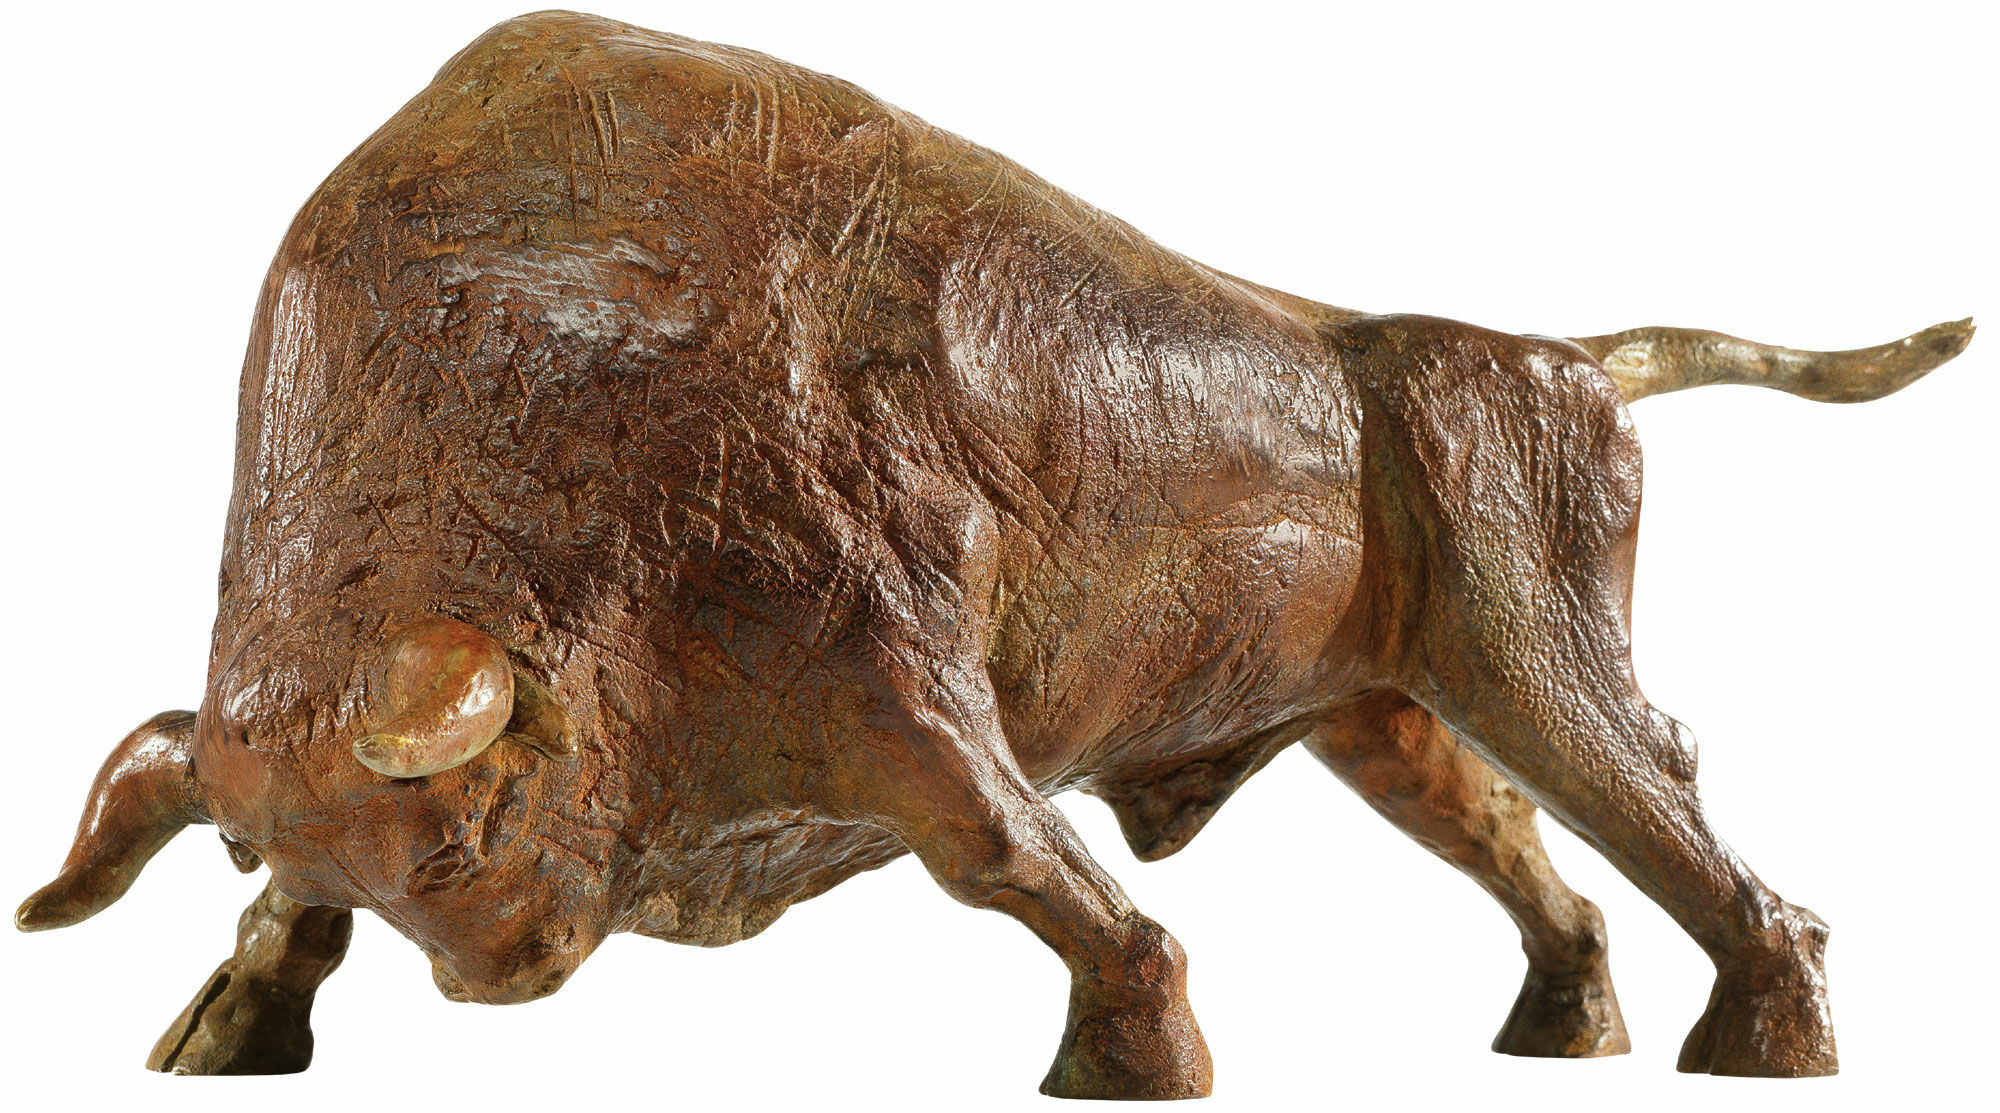 Sculpture "Bull", bronze by Hans-Peter Mader